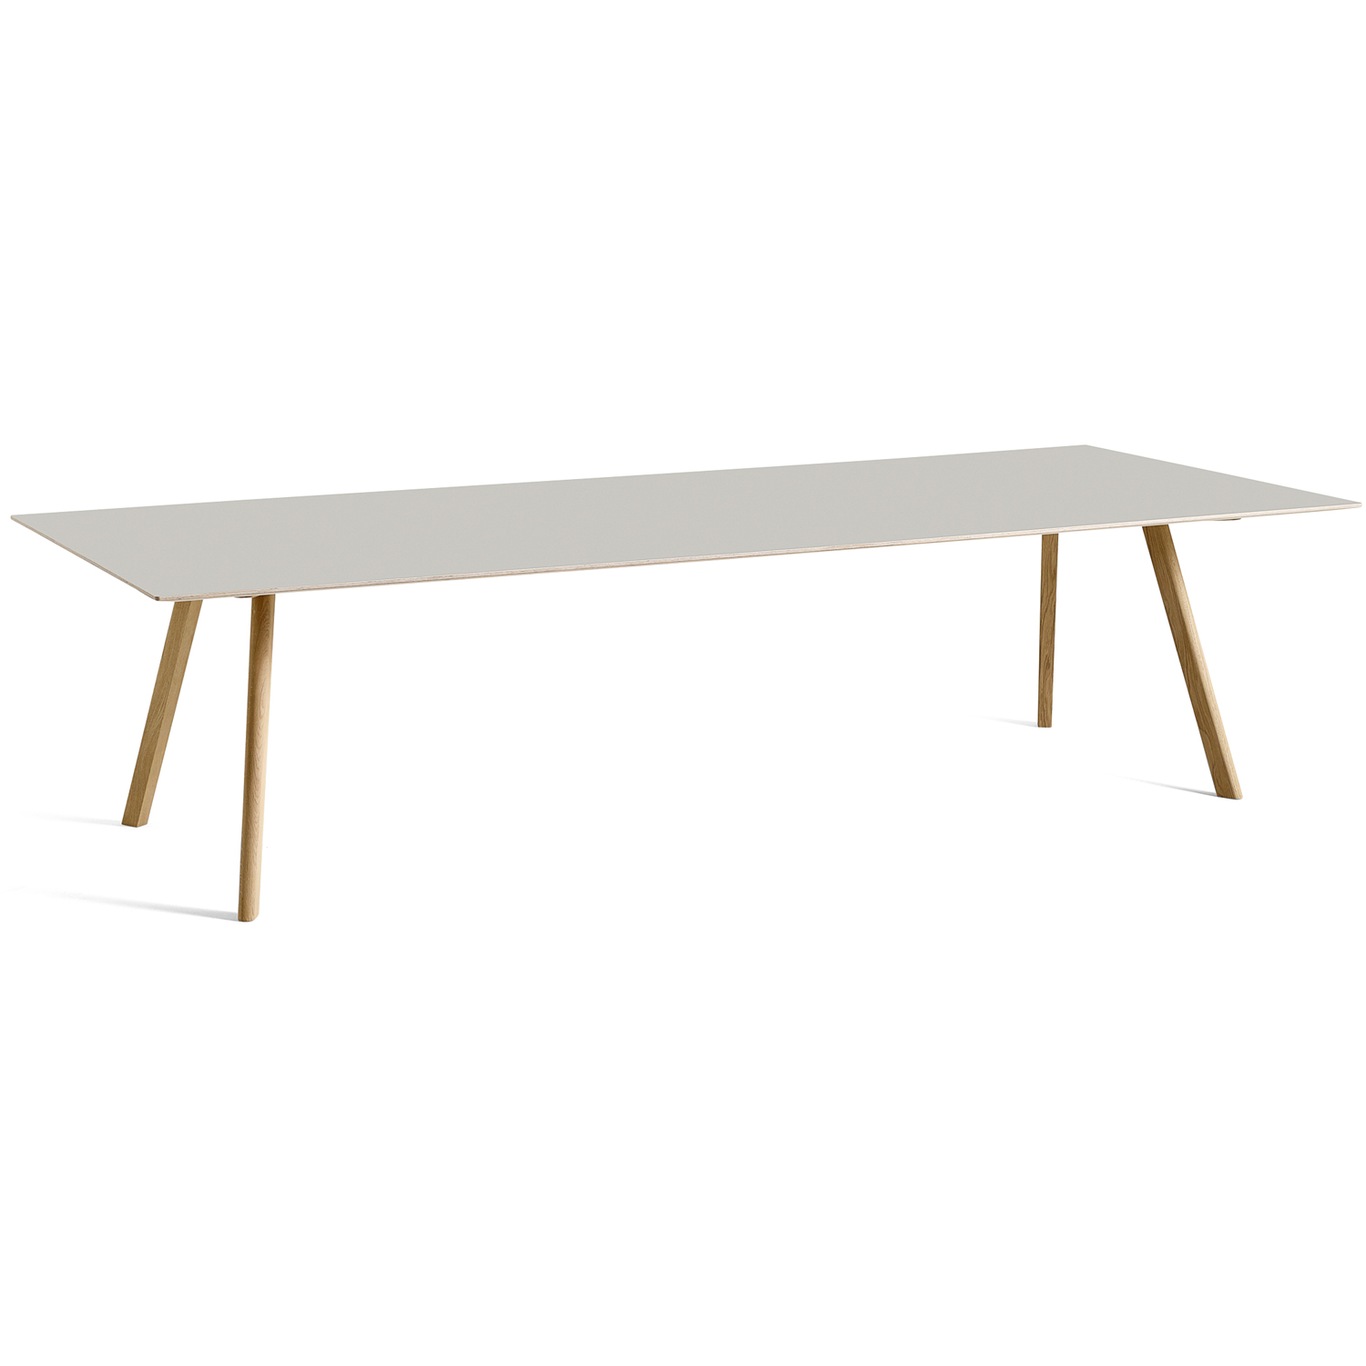 CPH 30 Pöytä 250x120 cm, Vesipohjaisella Lakalla Käsitelty Tammi / Off-white Linoleumi